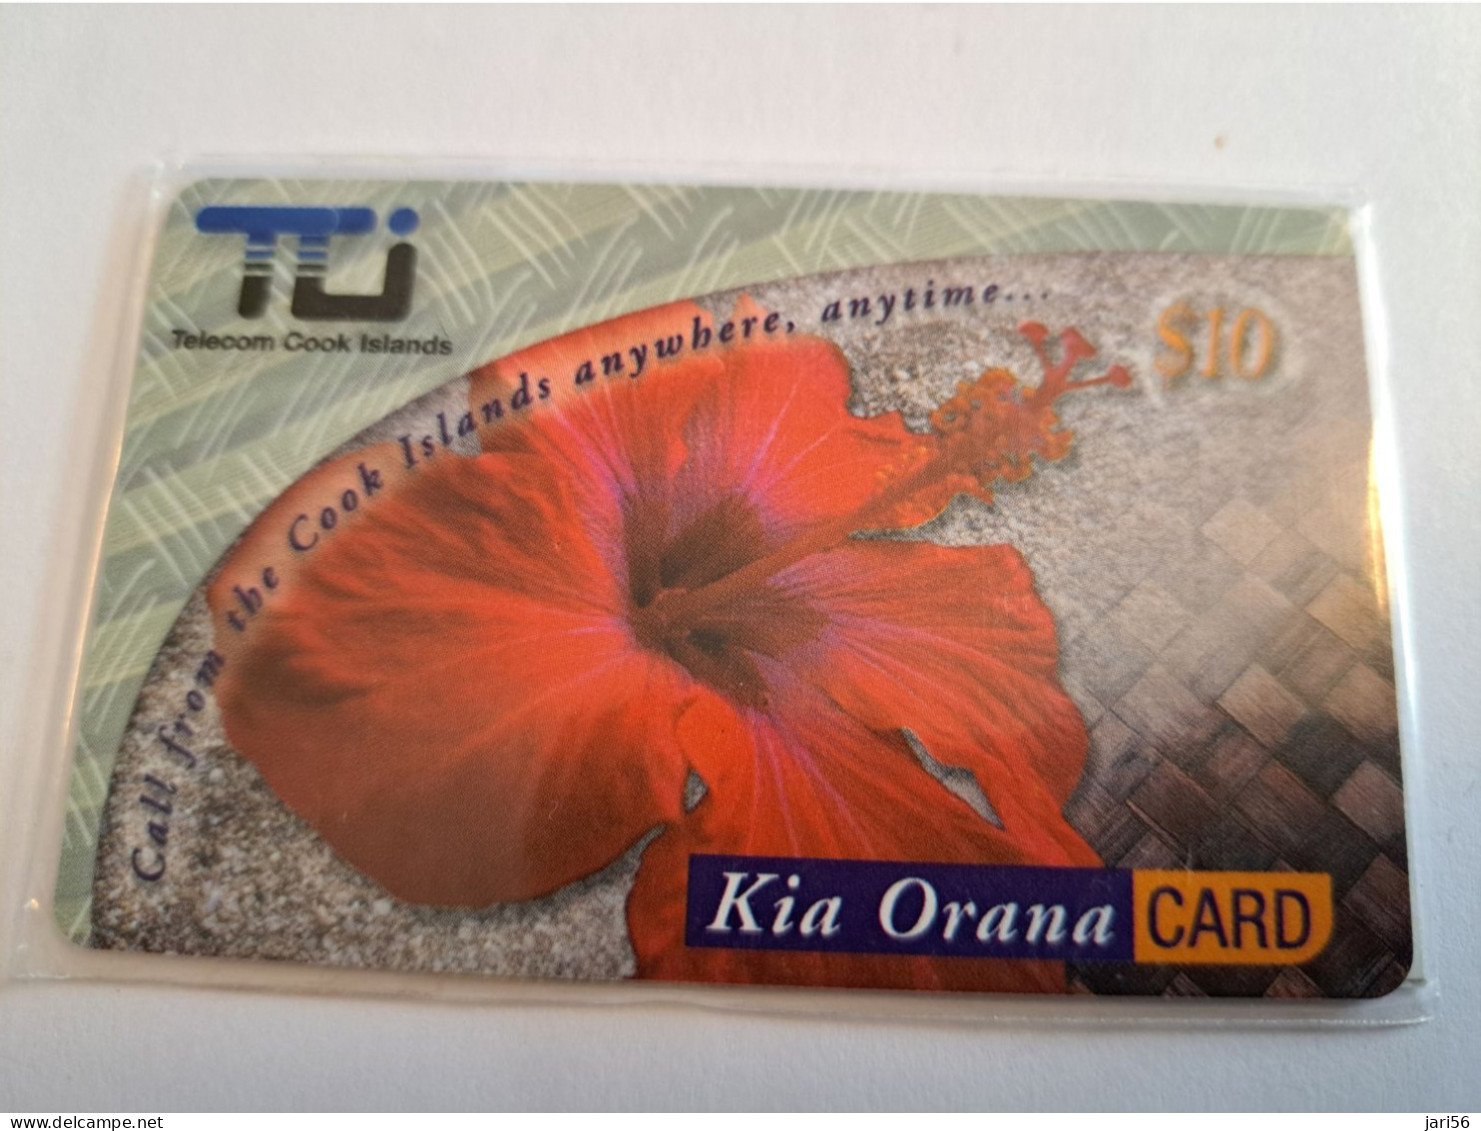 COOK ISLANDS / PREPAID CARD/  $10,-/ KIA ORANA CARD /TELECOM COOK ISLANDS/ HIBISCUS FLOWER/ MINT IN WRAPPER   ** 16569** - Islas Cook